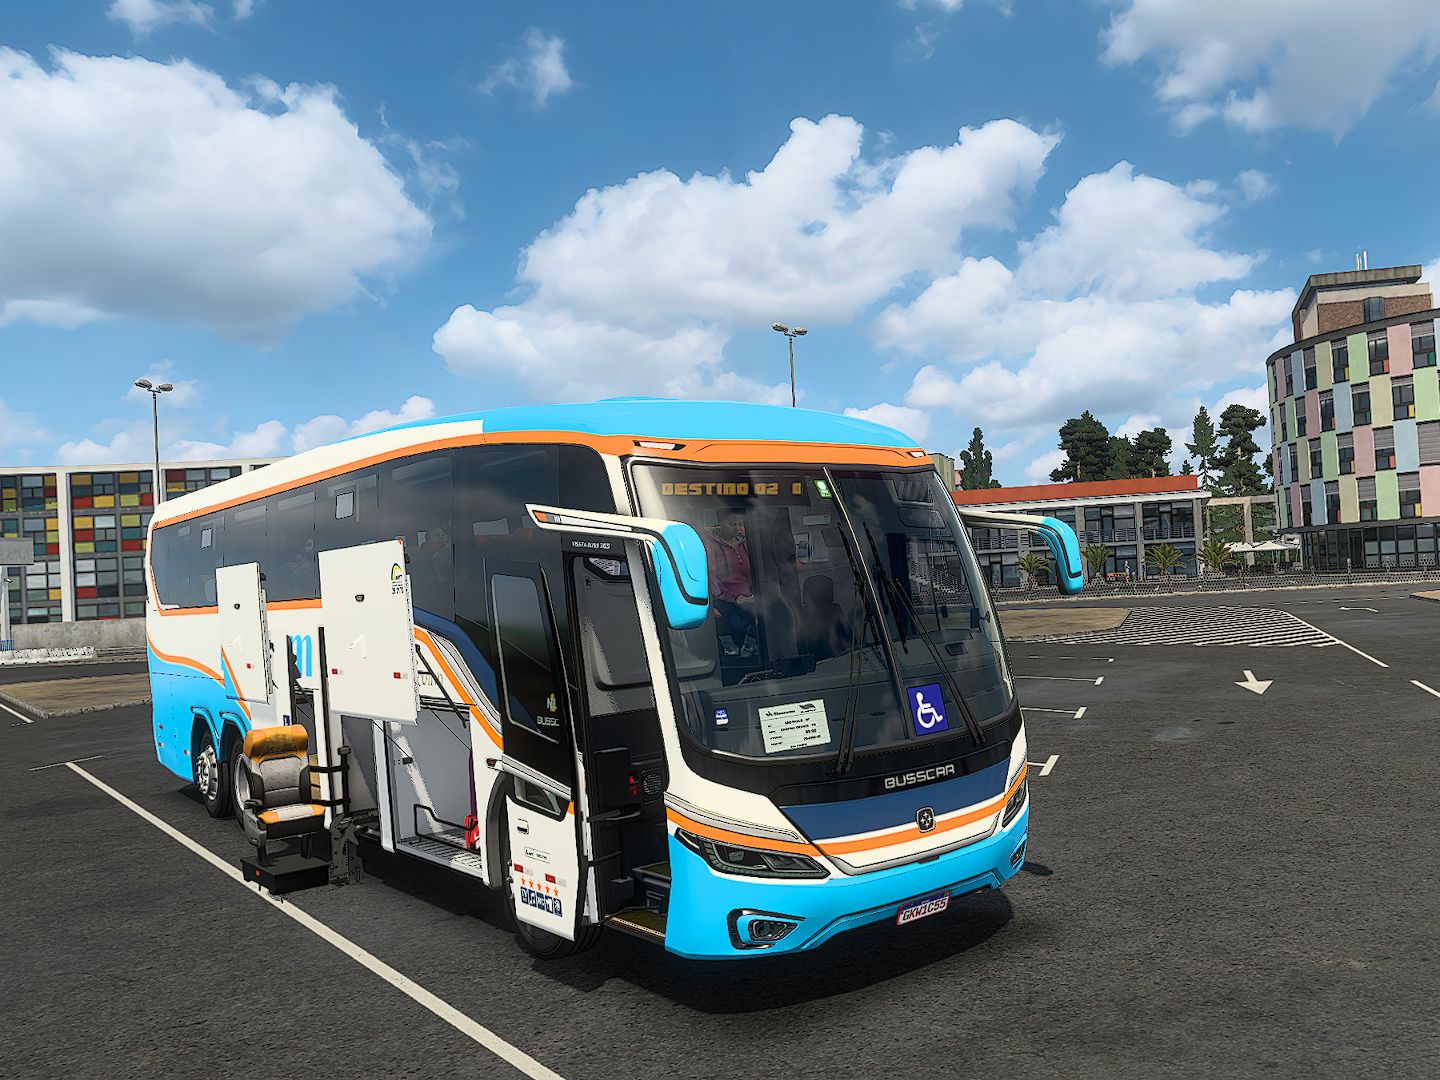 欧洲卡车模拟2驾驶斯堪尼亚busscar vissta buss 365 nb1 大巴客运